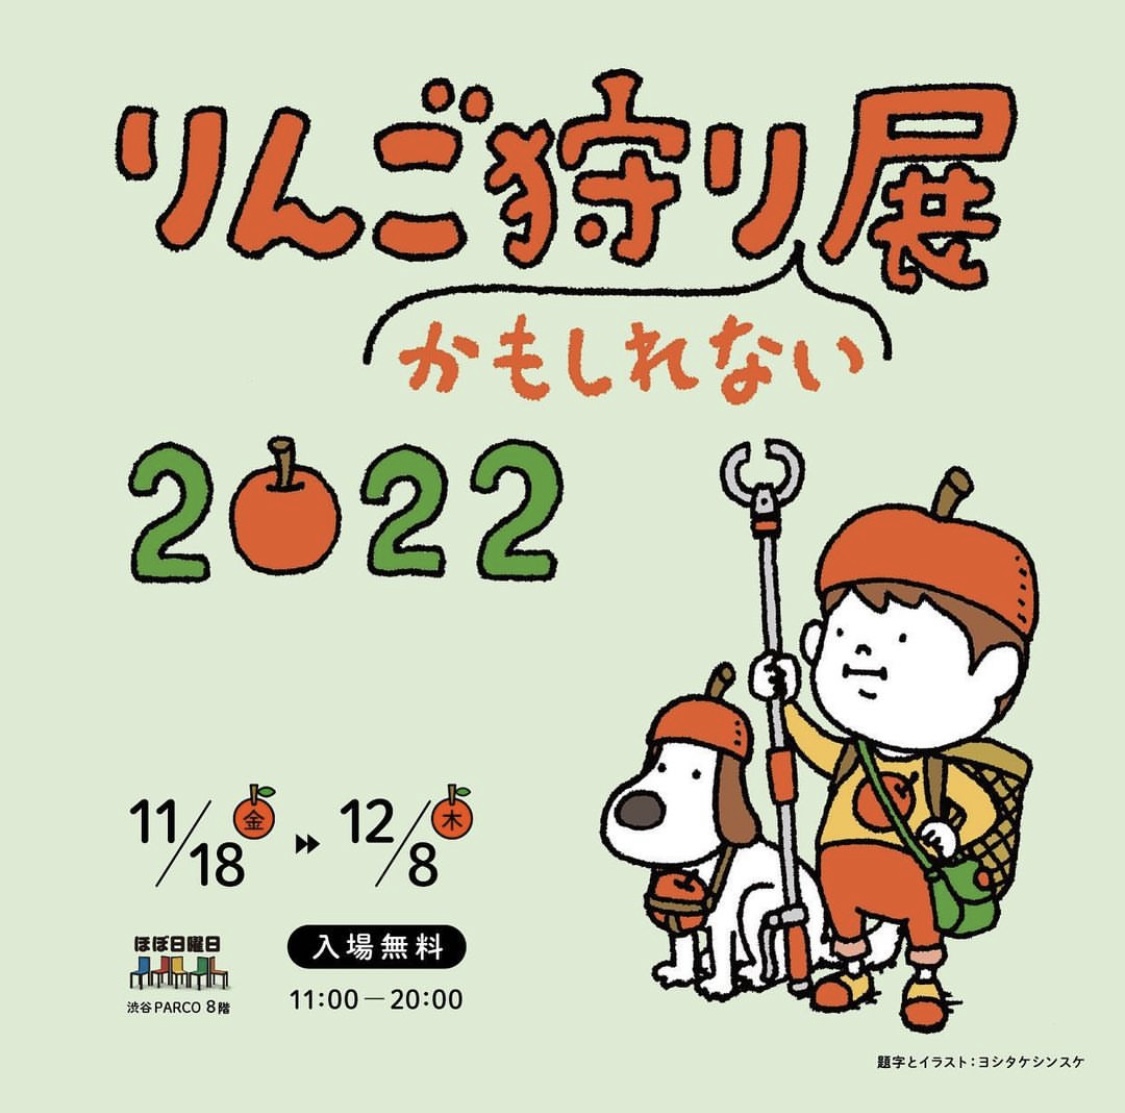 【期間限定】渋谷パルコですっぱいりんごジュースが買えます！りんご狩りかもしれない展